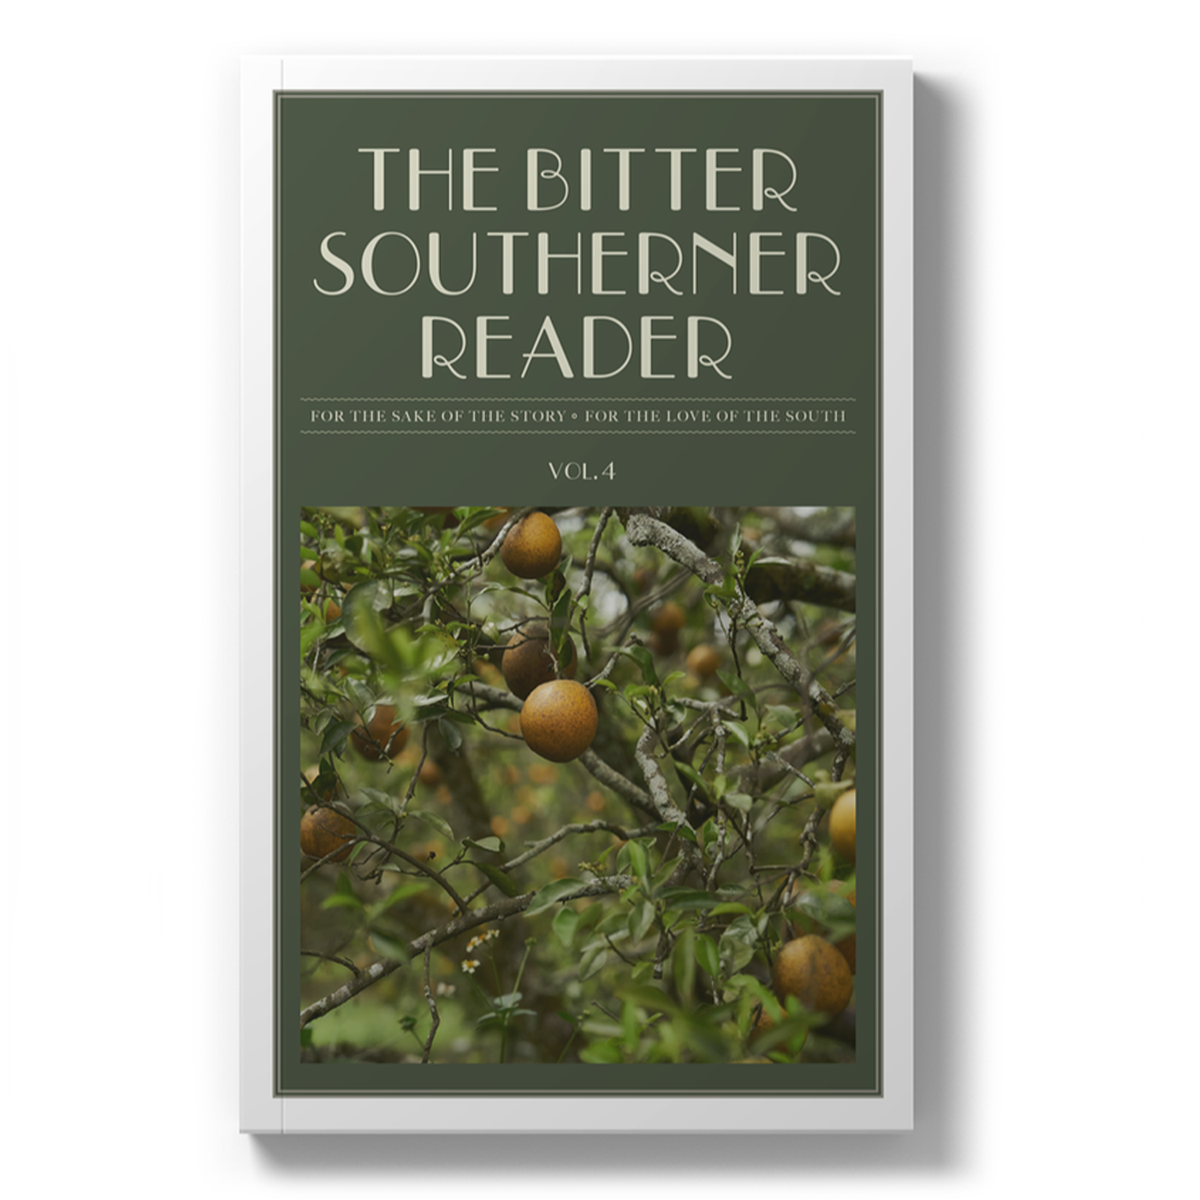 The Bitter Southerner Reader: Vol. 4